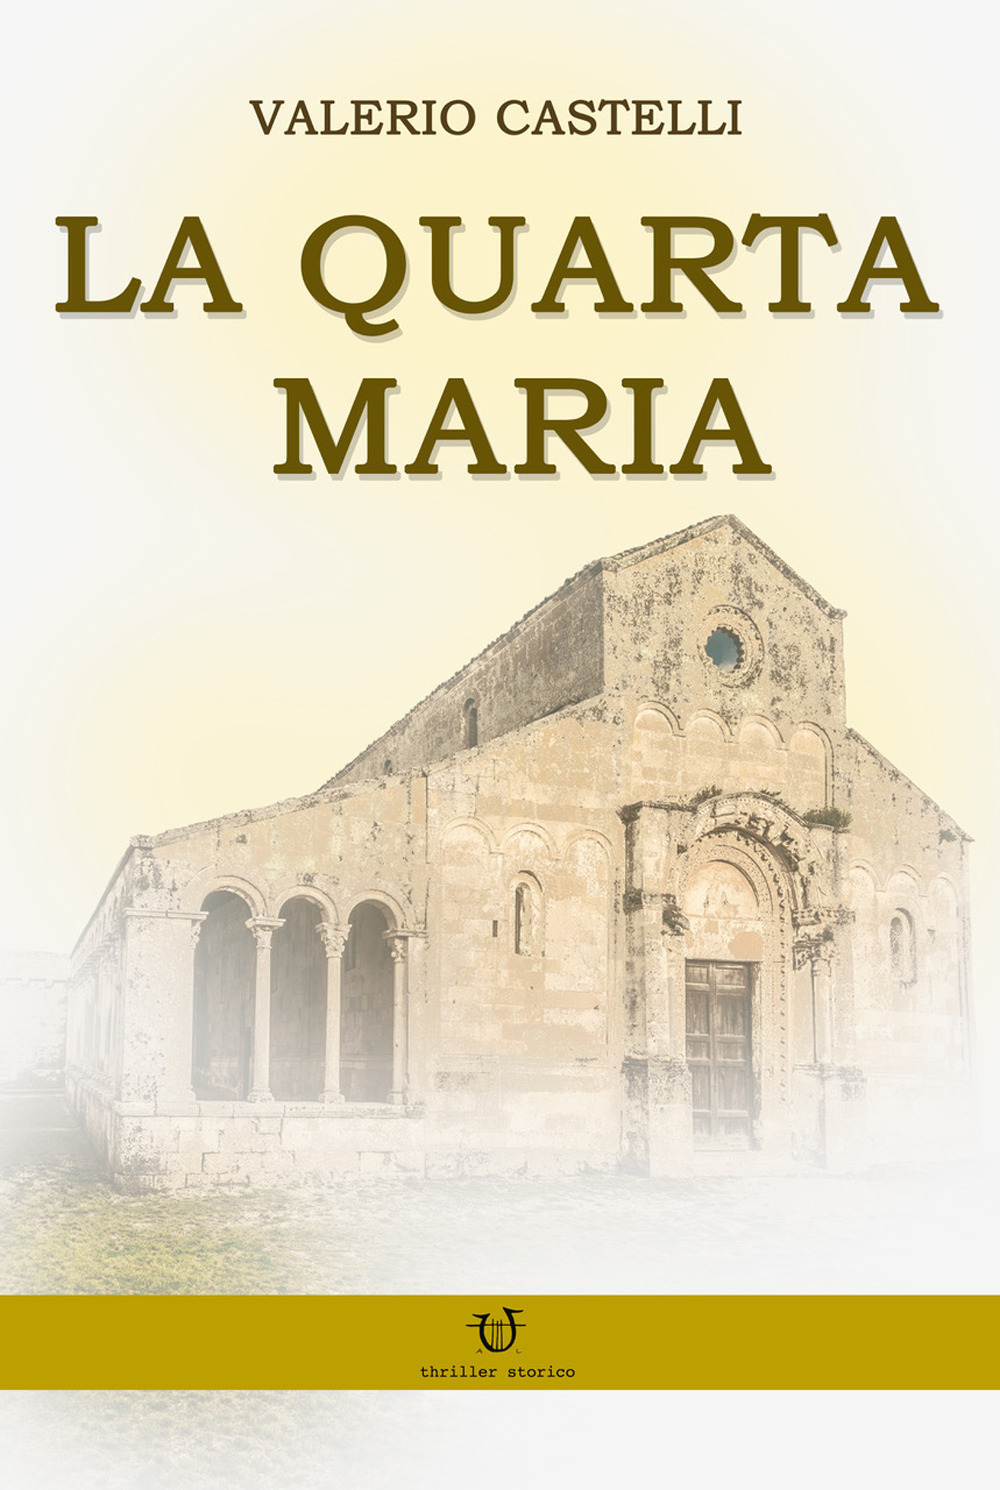 Libri Valerio Castelli - La Quarta Maria NUOVO SIGILLATO, EDIZIONE DEL 19/12/2019 SUBITO DISPONIBILE